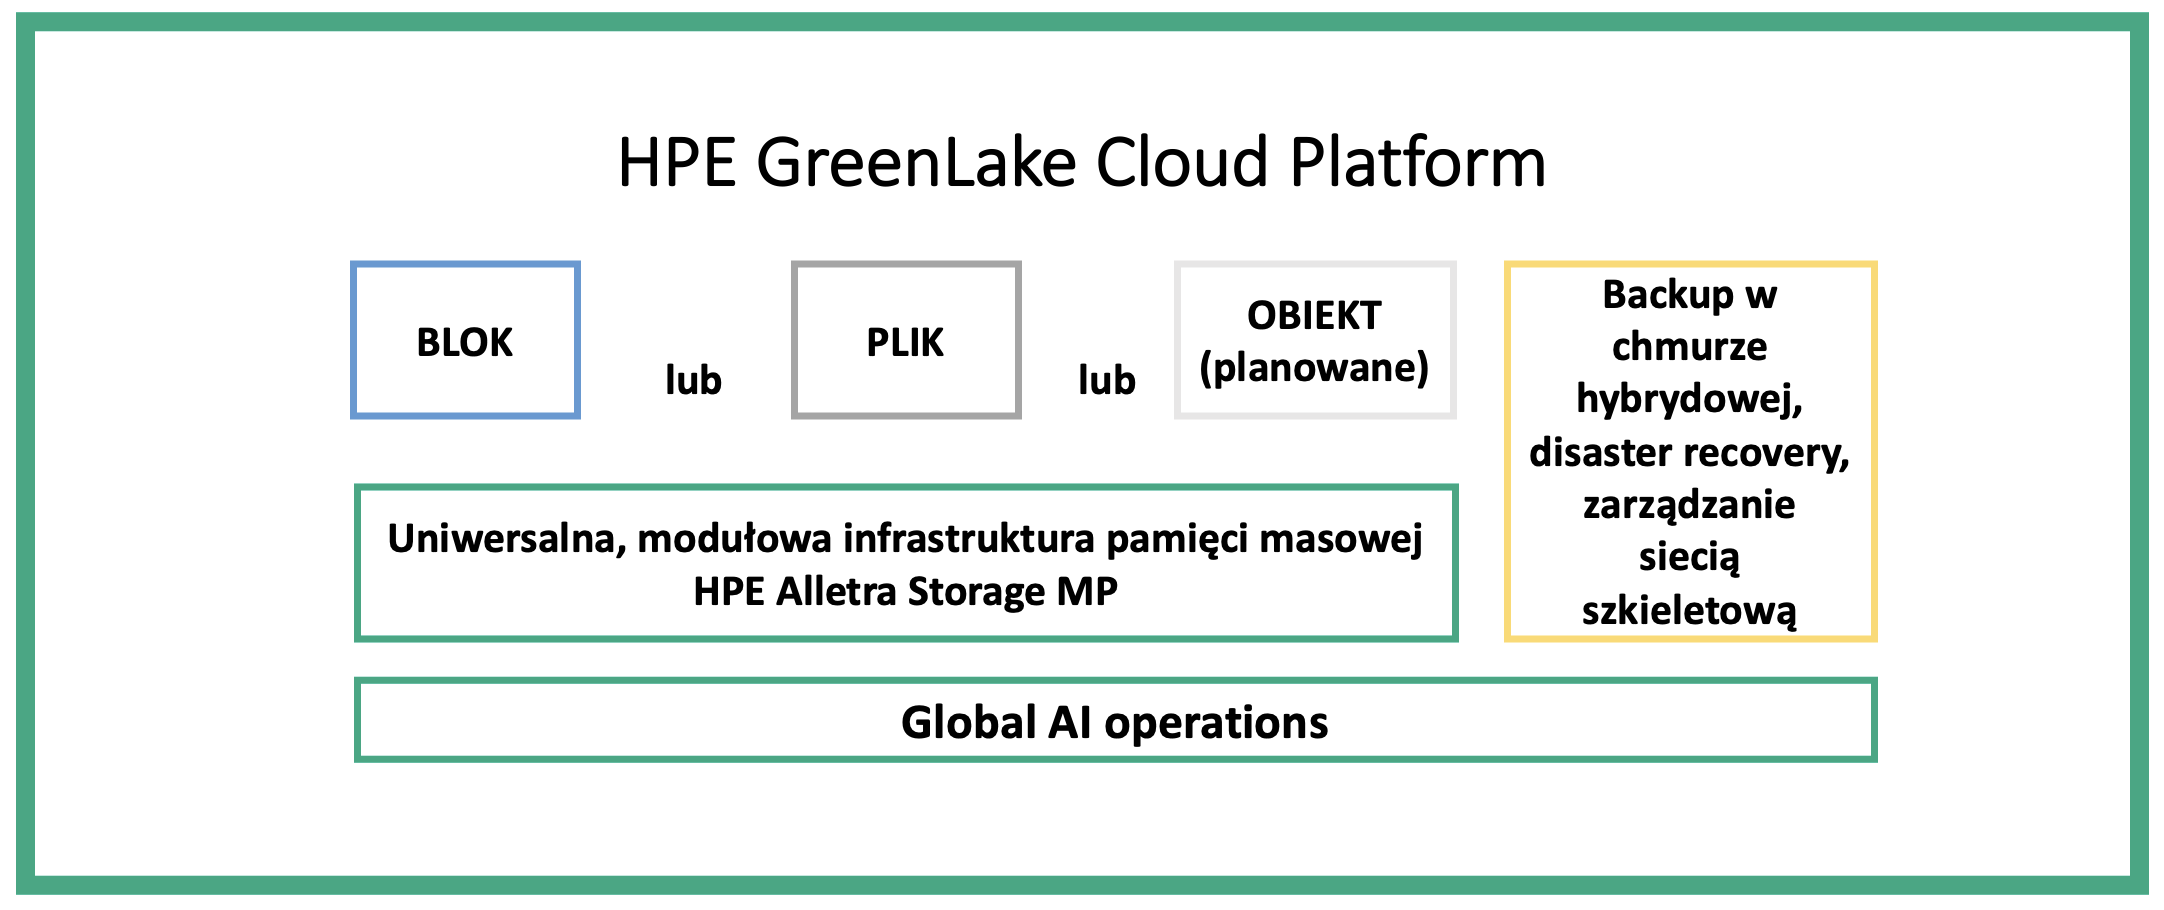 HPE GreenLake Cloud Platform